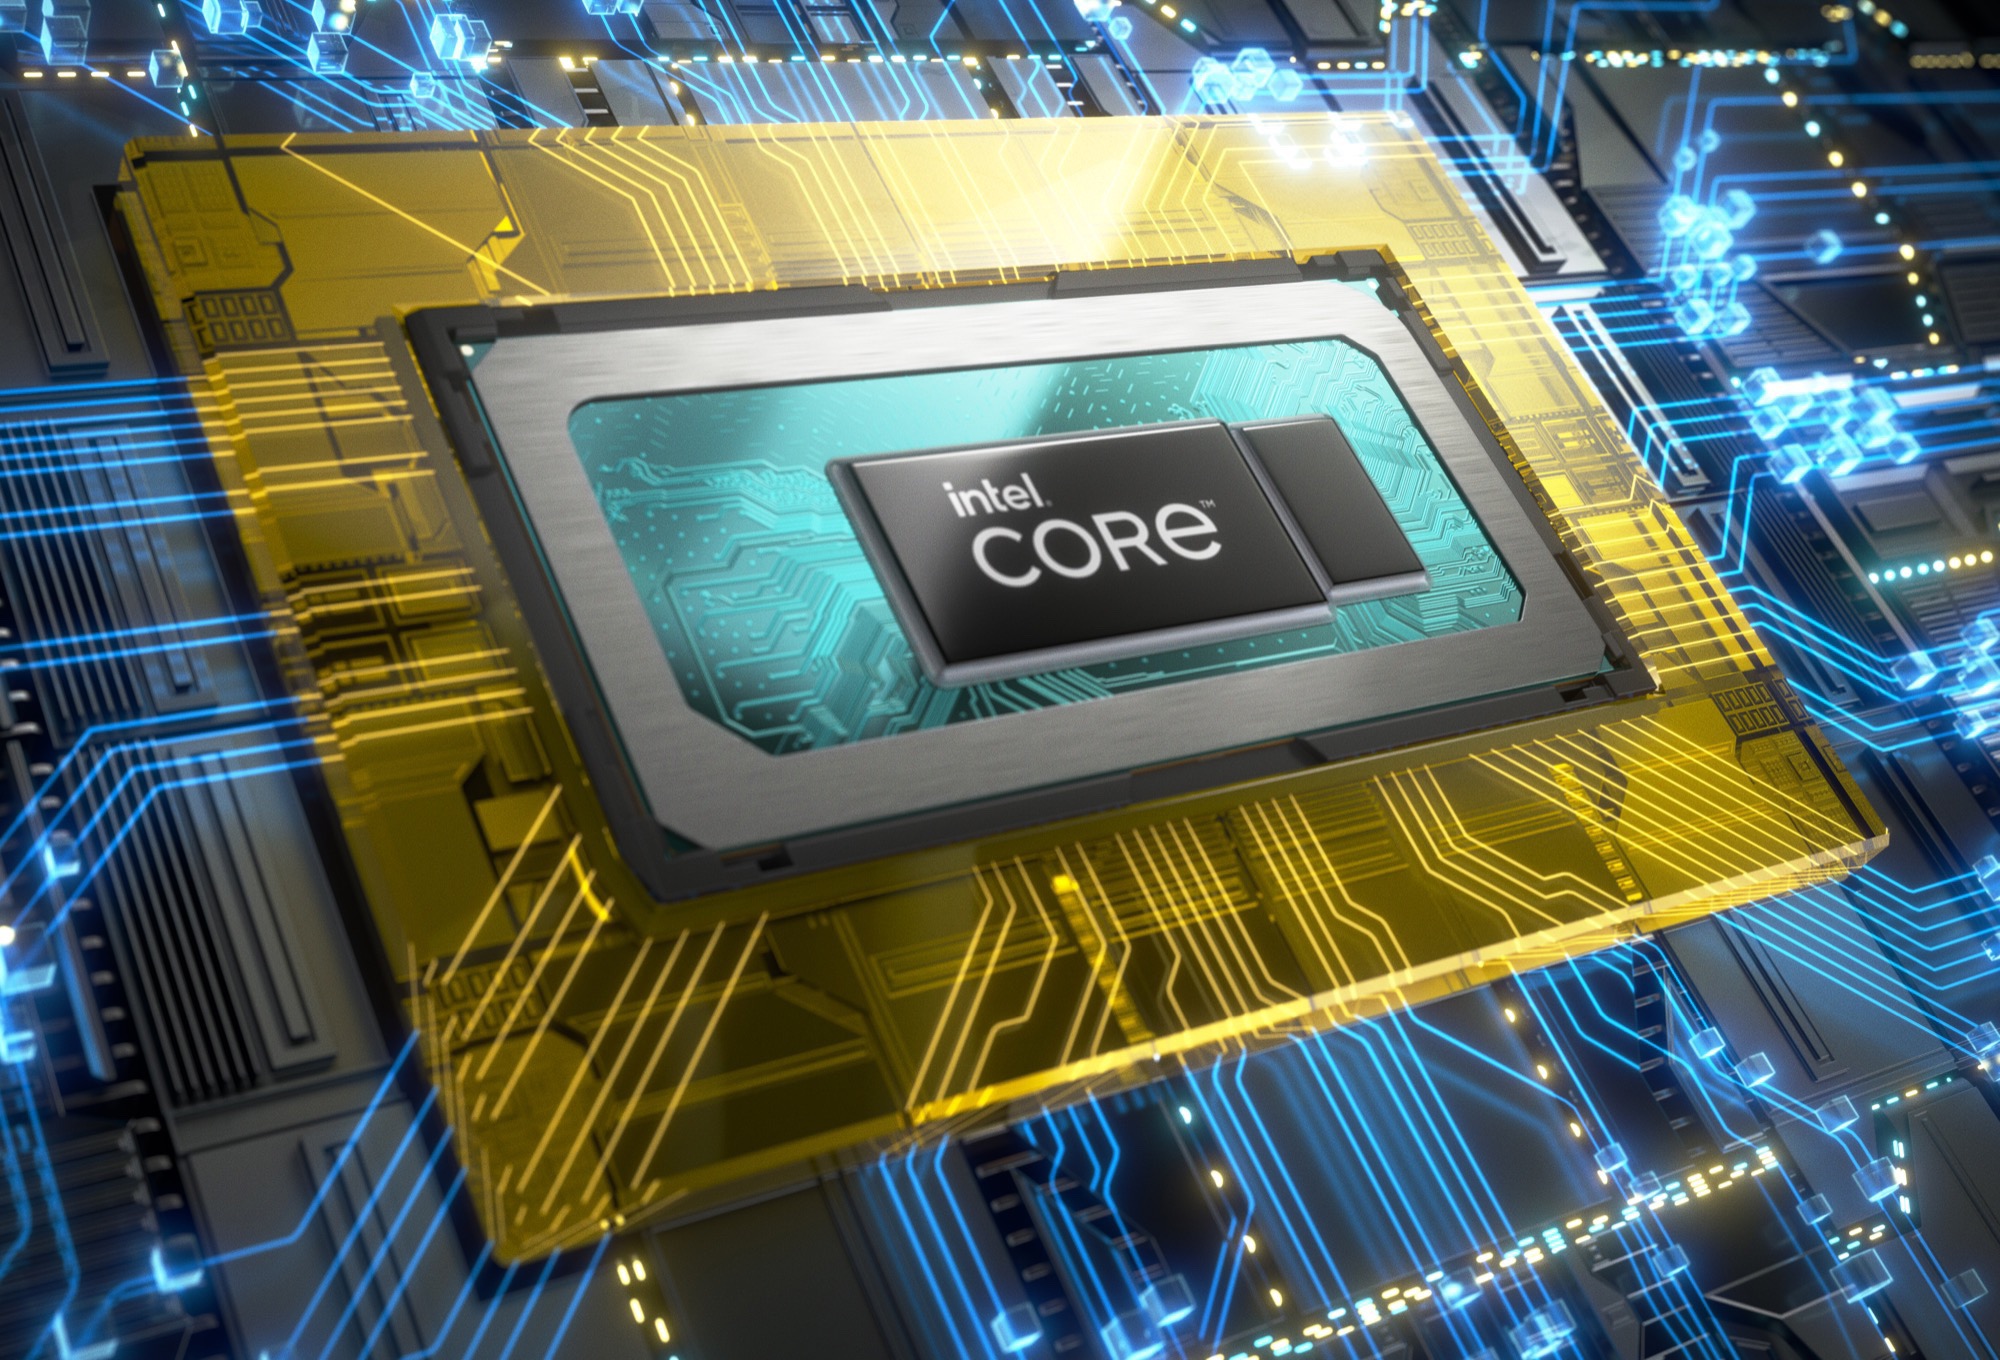 Ryzen 7 5800H vs Core i7 11800H: compare processadores AMD e Intel